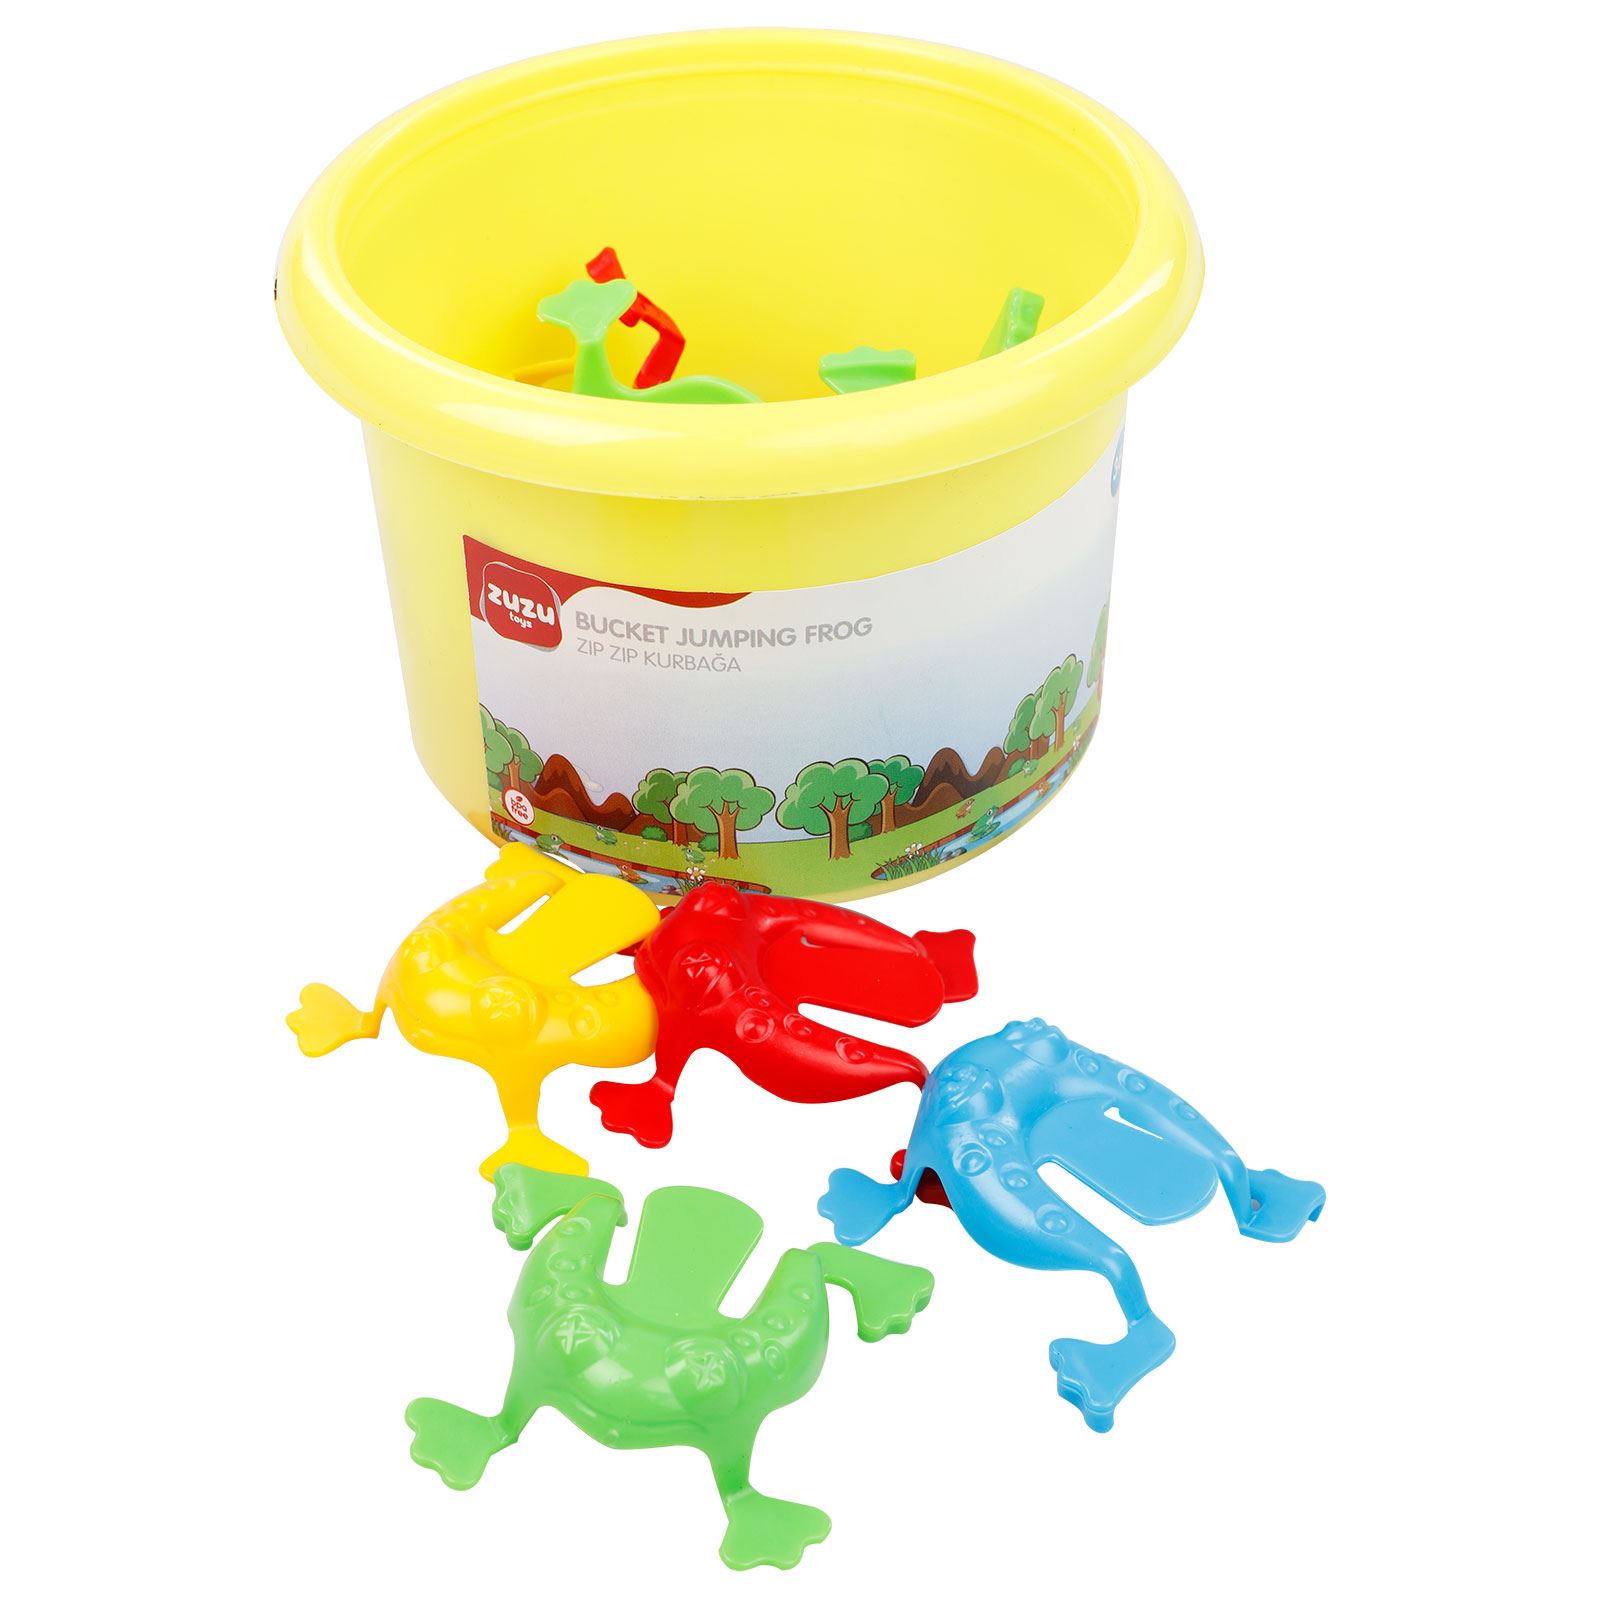 Zuzu Toys Zıp Zıp Kurbağa Oyuncak Sarı